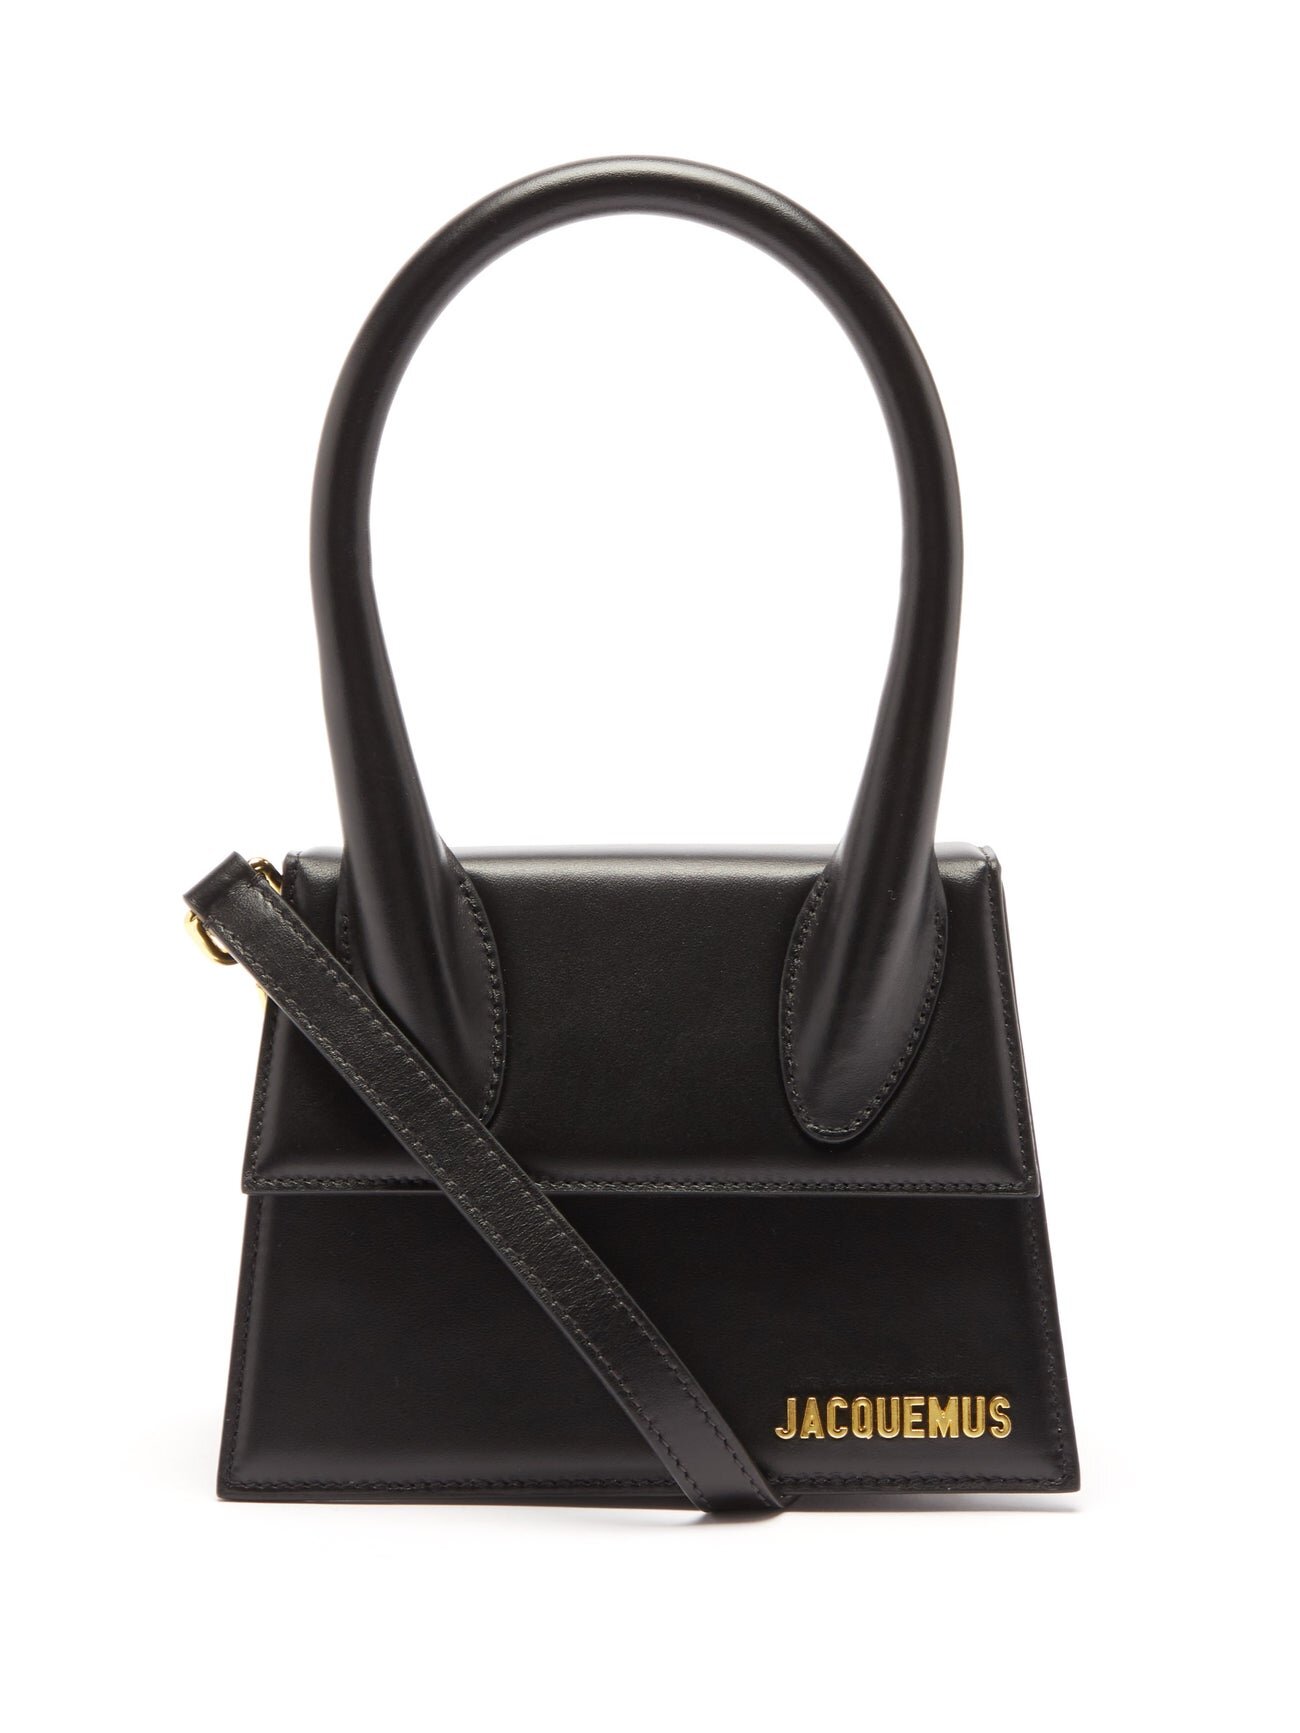 Jacquemus Chiquito Medium Bag in Black Leather — UFO No More